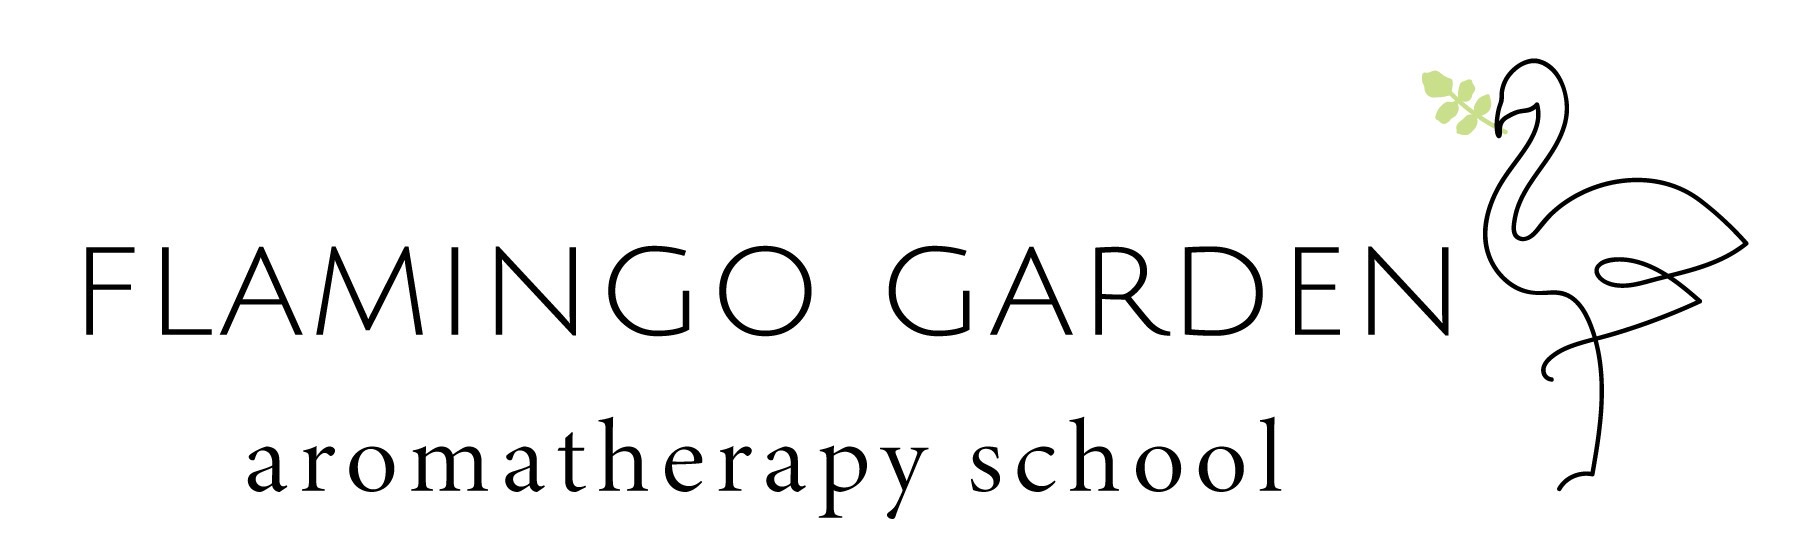 FLAMINGO GARDEN~aromatherapy school~